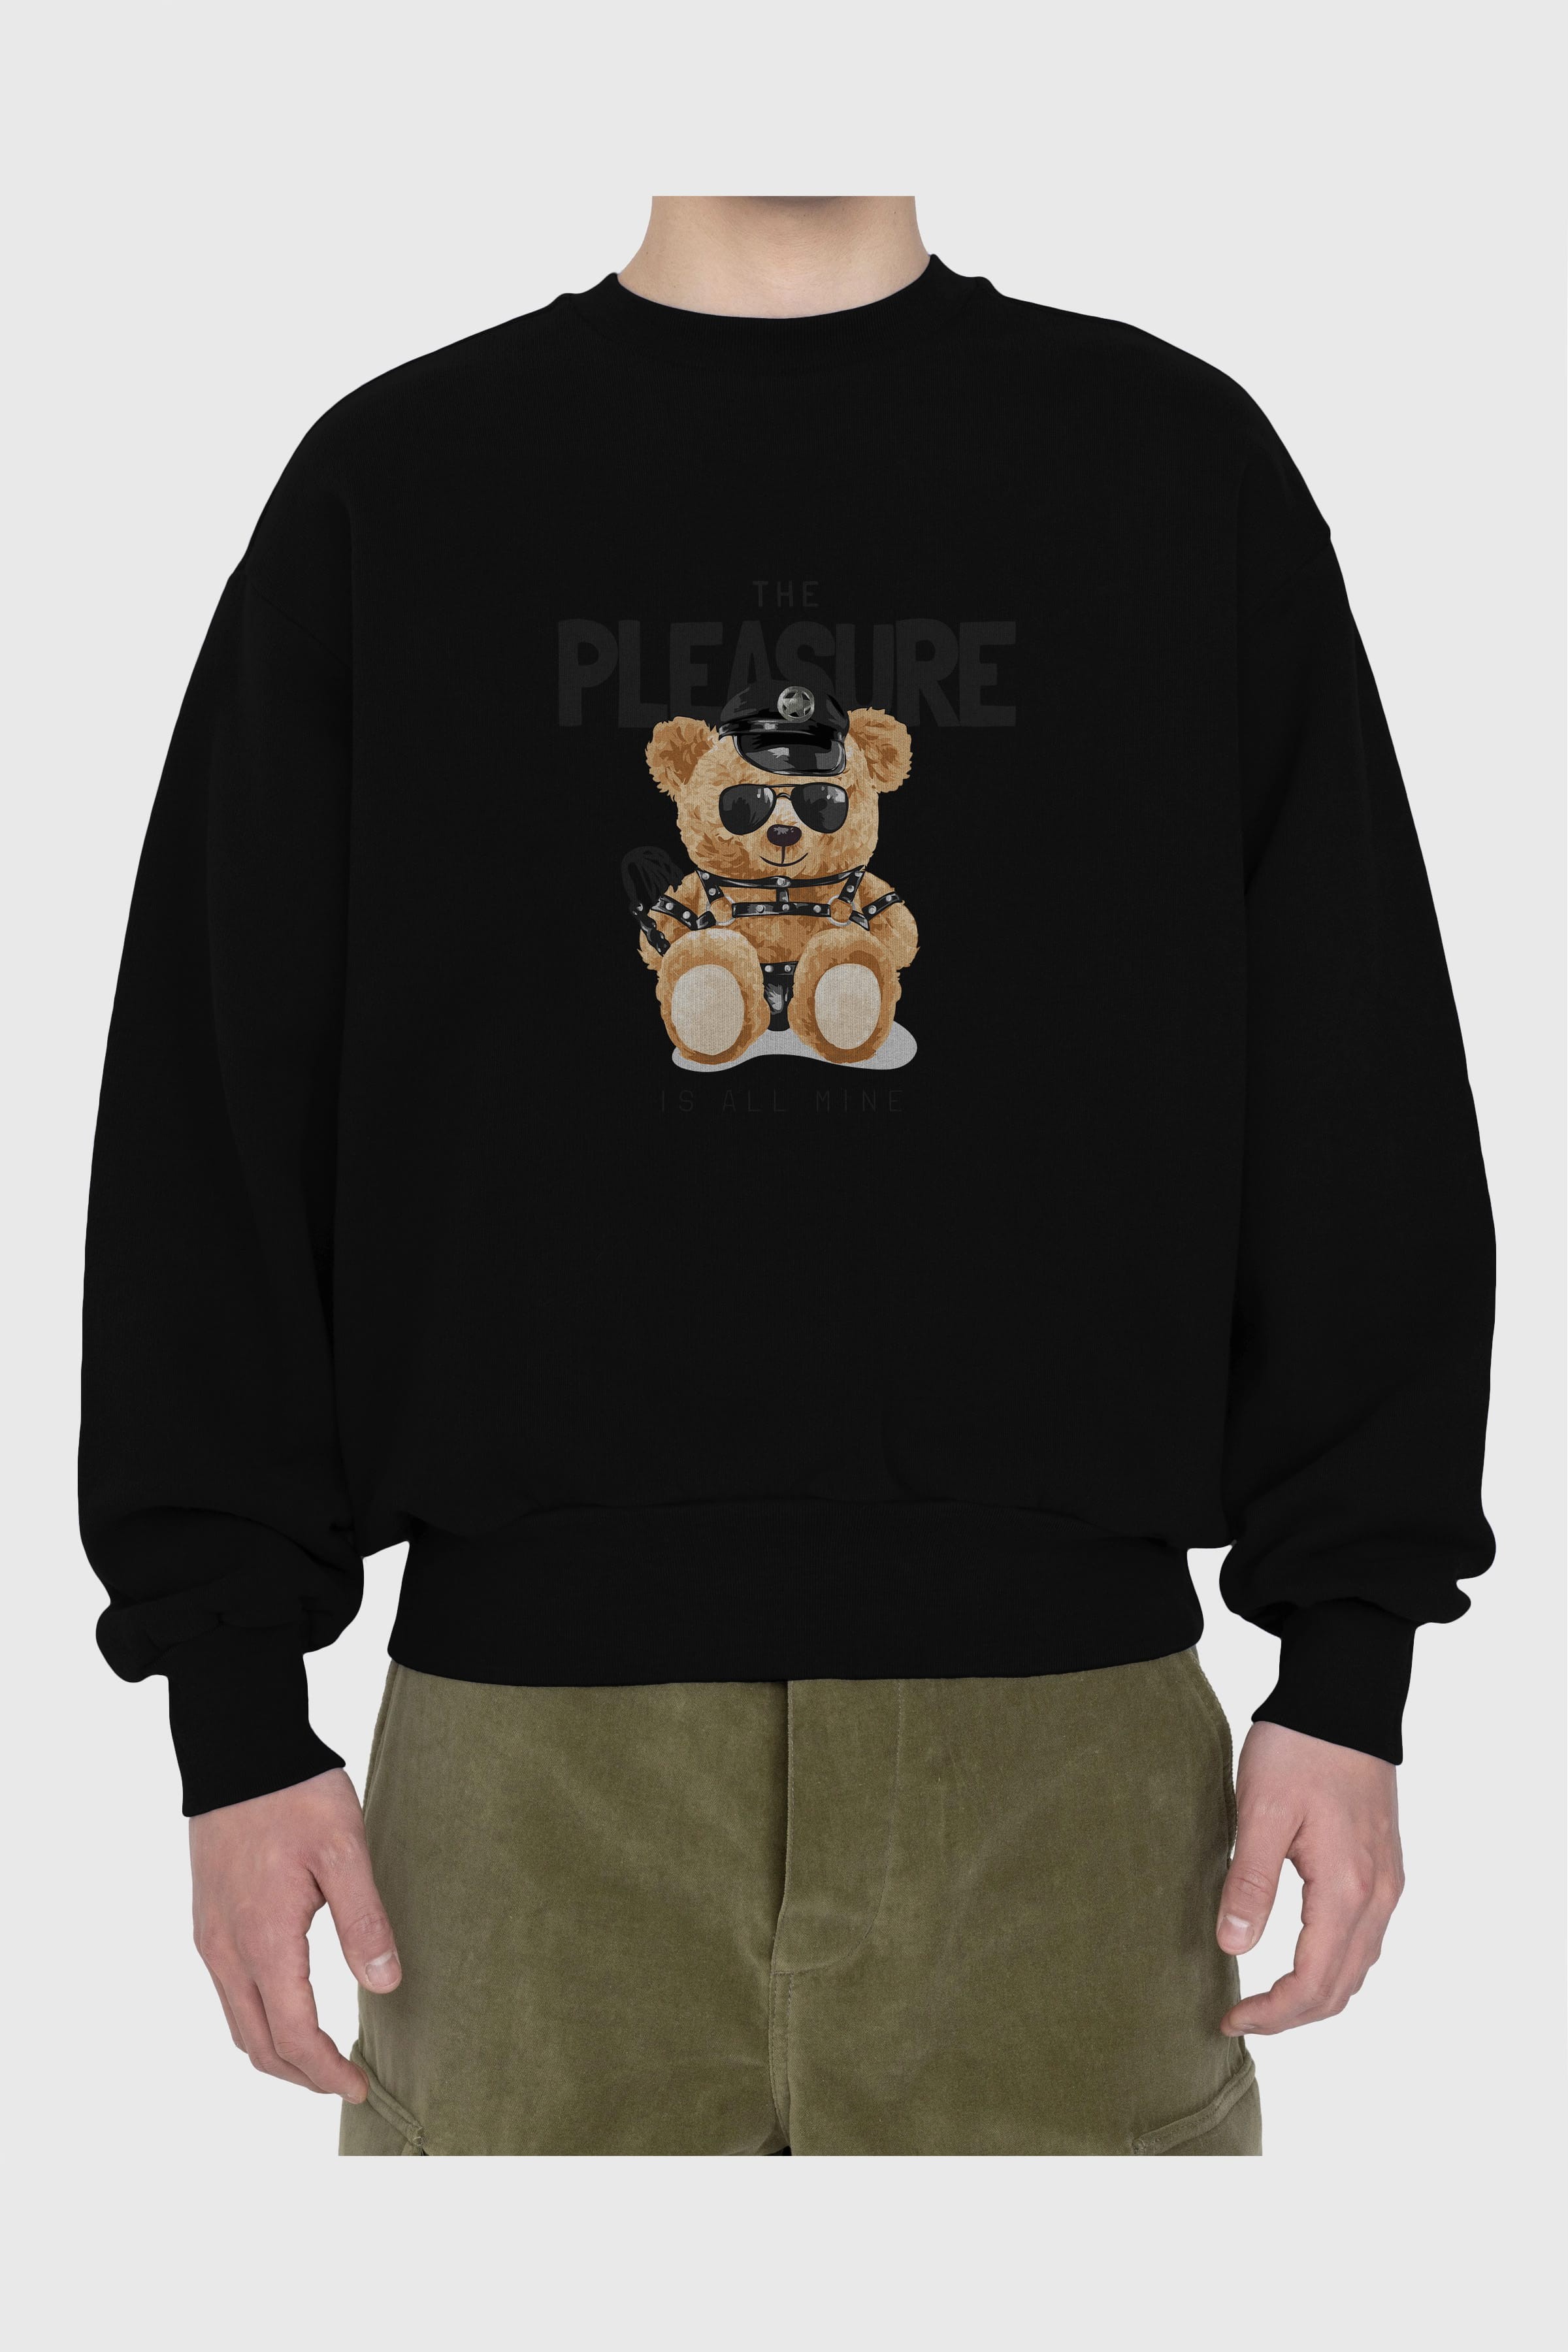 Teddy Bear The Pleasure Ön Baskılı Oversize Sweatshirt Erkek Kadın Unisex